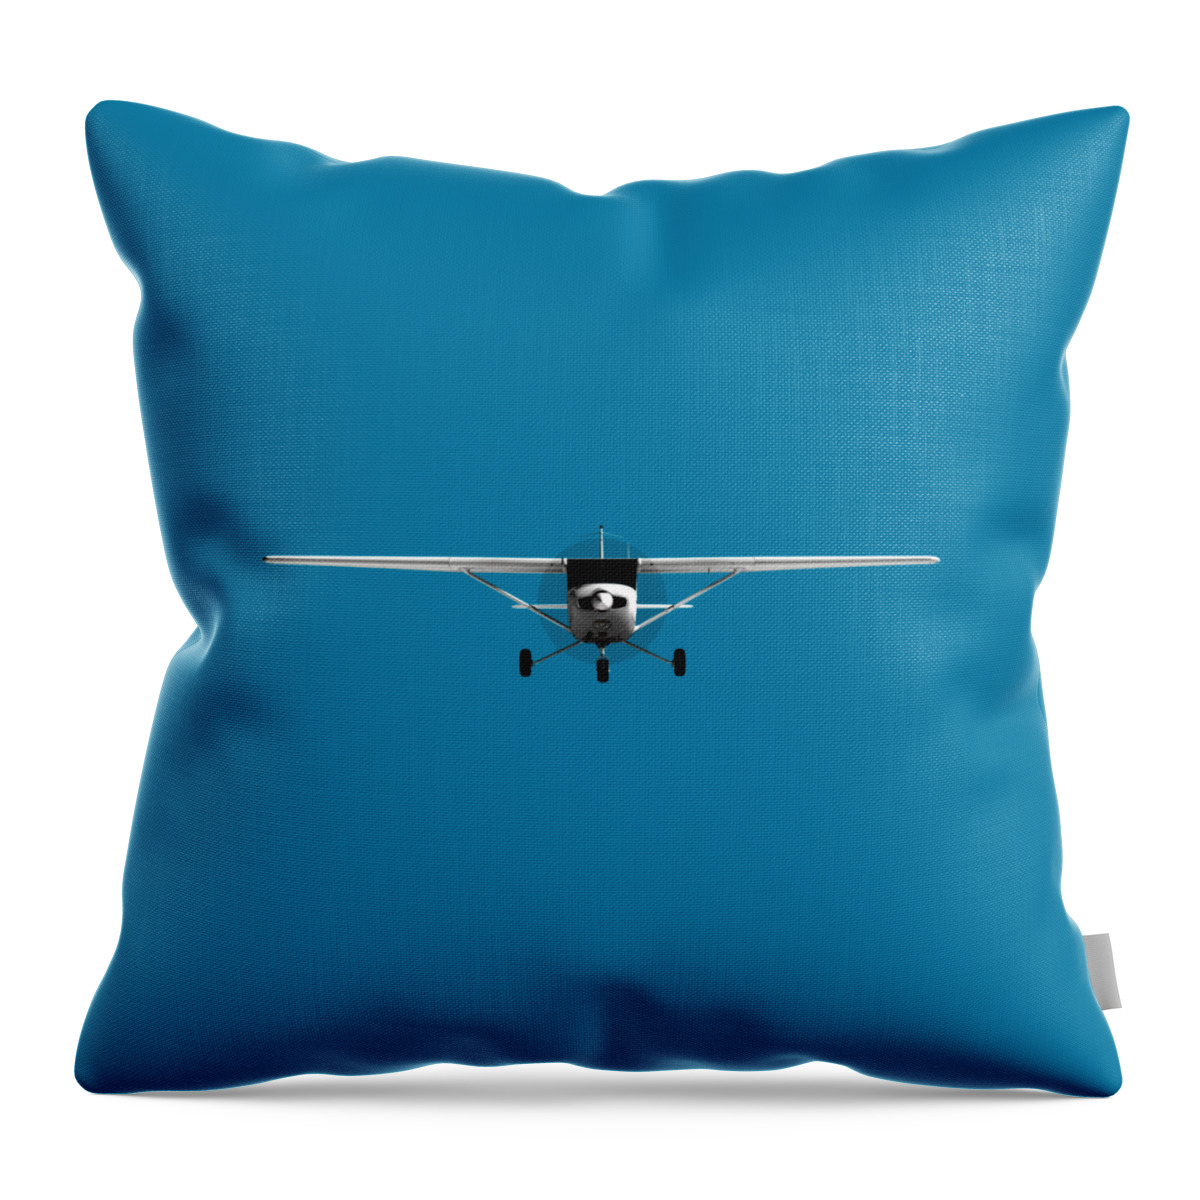 3d Throw Pillow featuring the digital art Cessna 152 by Jan Brons